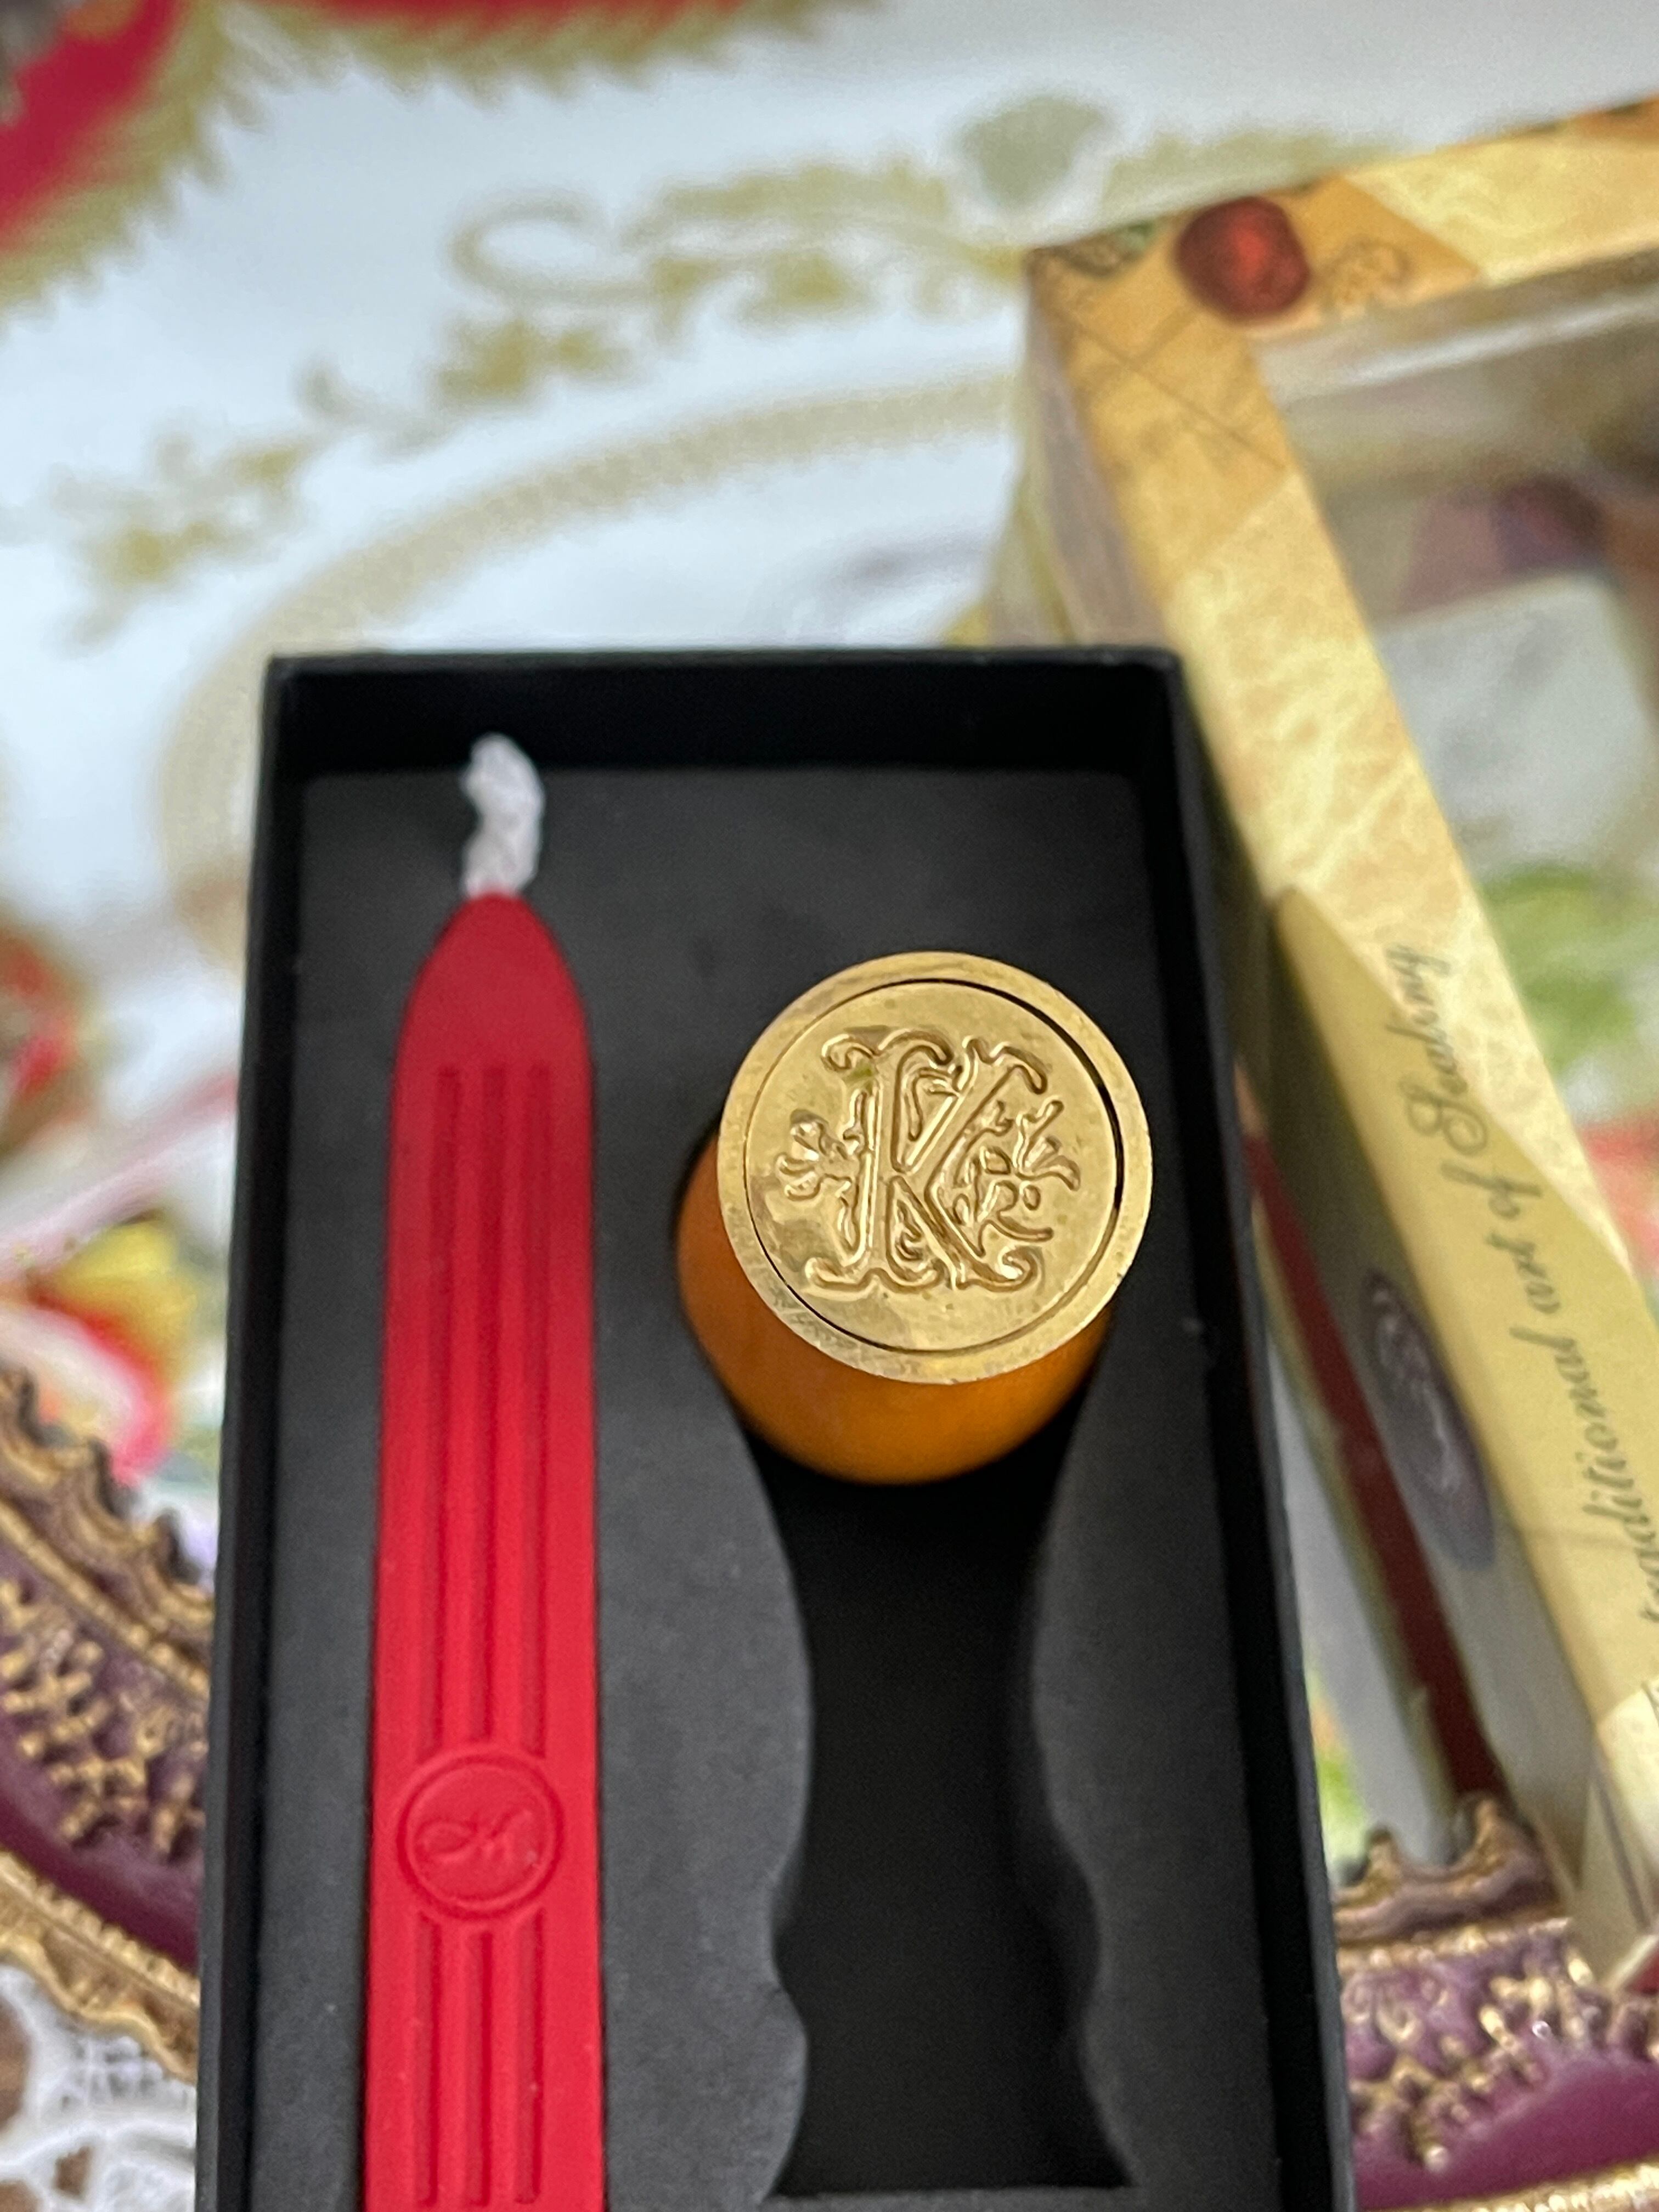 『Royal Palace』イニシャル『K』 シーリングスタンプ Personal seal set with wax